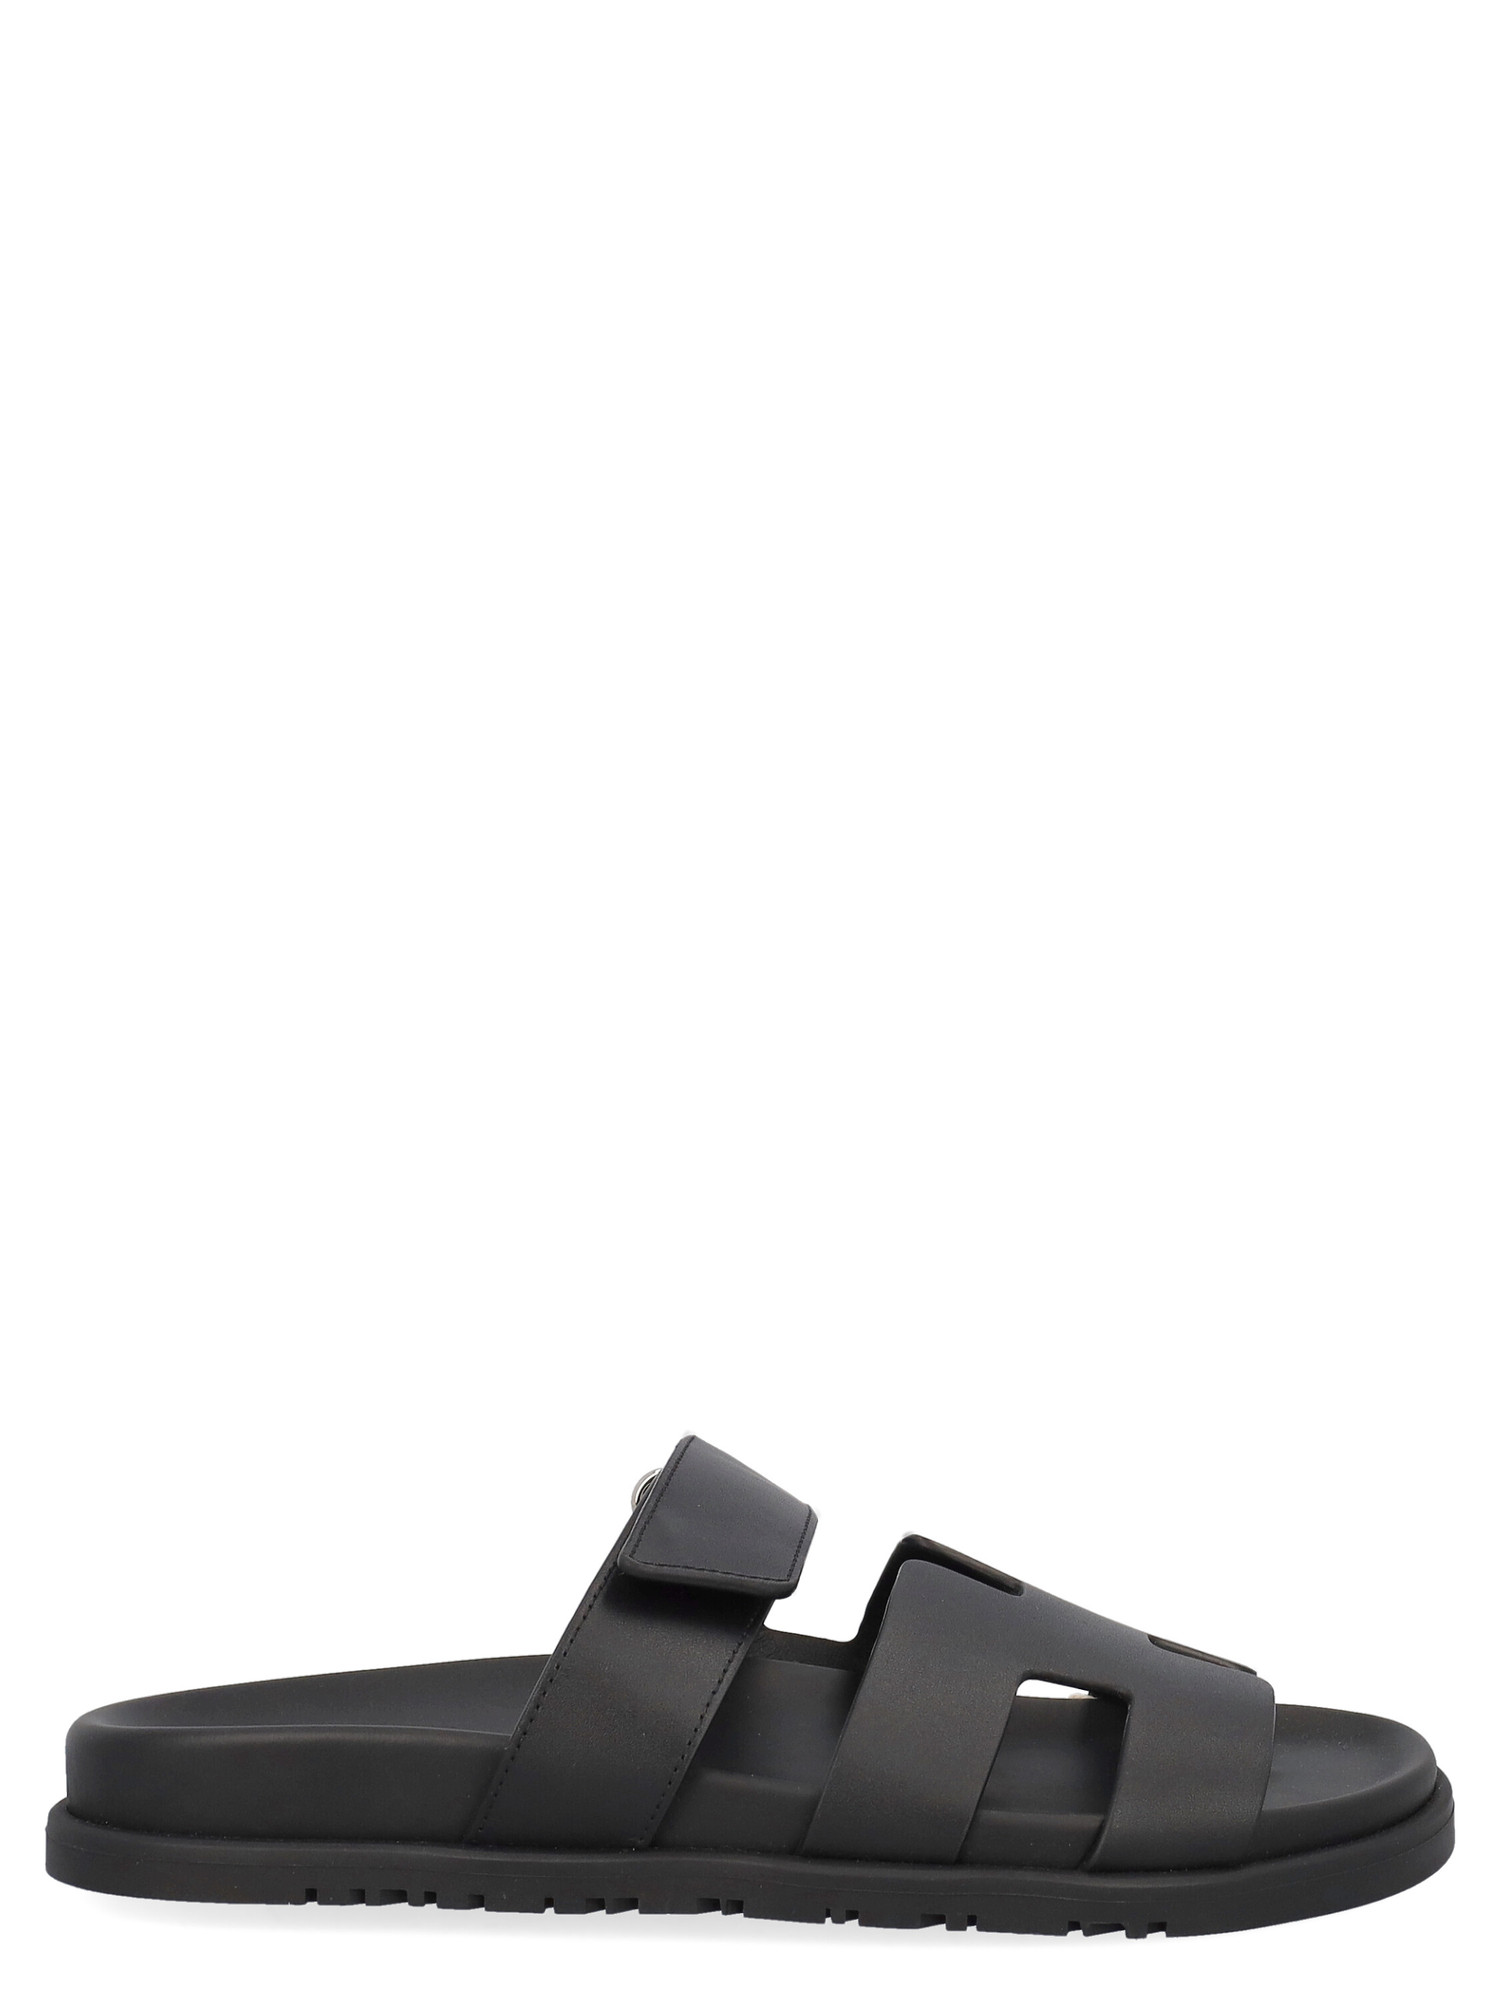 Slippers Pour Femme - Hermes - En Leather Black - Taille: IT 38.5 - EU 38.5